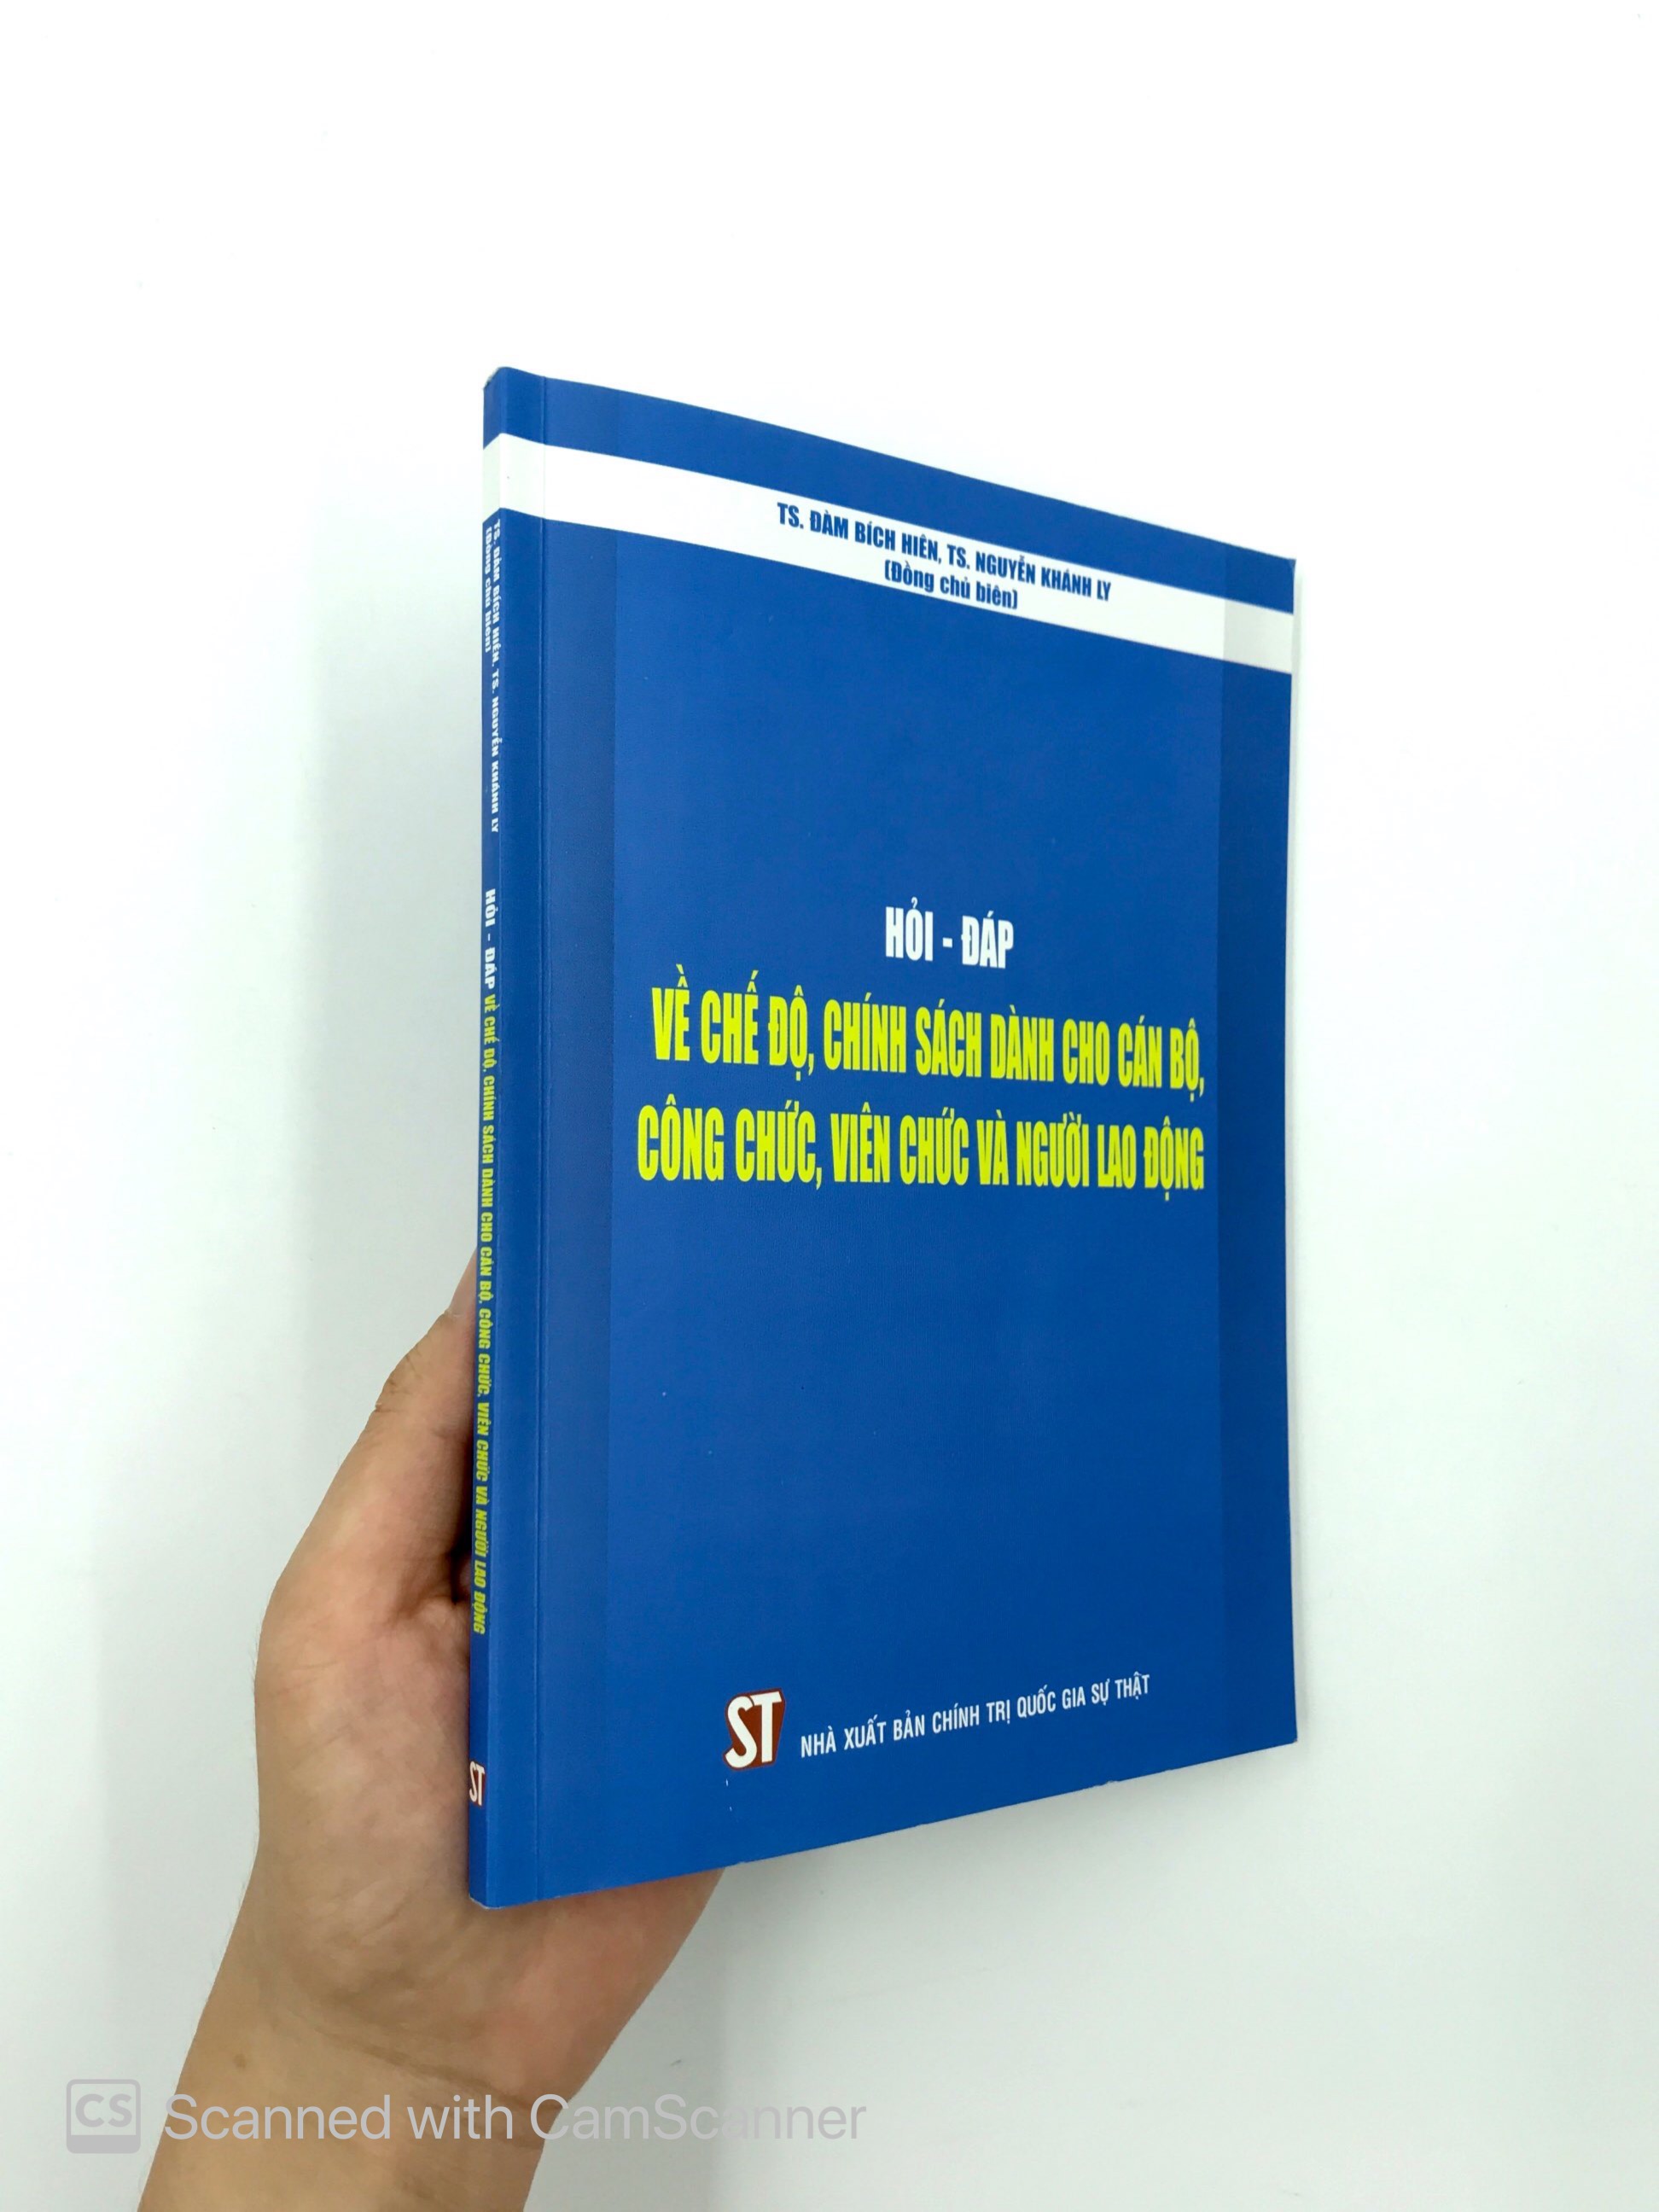 Hỏi-Đáp Về Chế Độ, Chính Sách Dành Cho Cán Bộ, Công Chức, Viên Chức Và Người Lao Động PDF